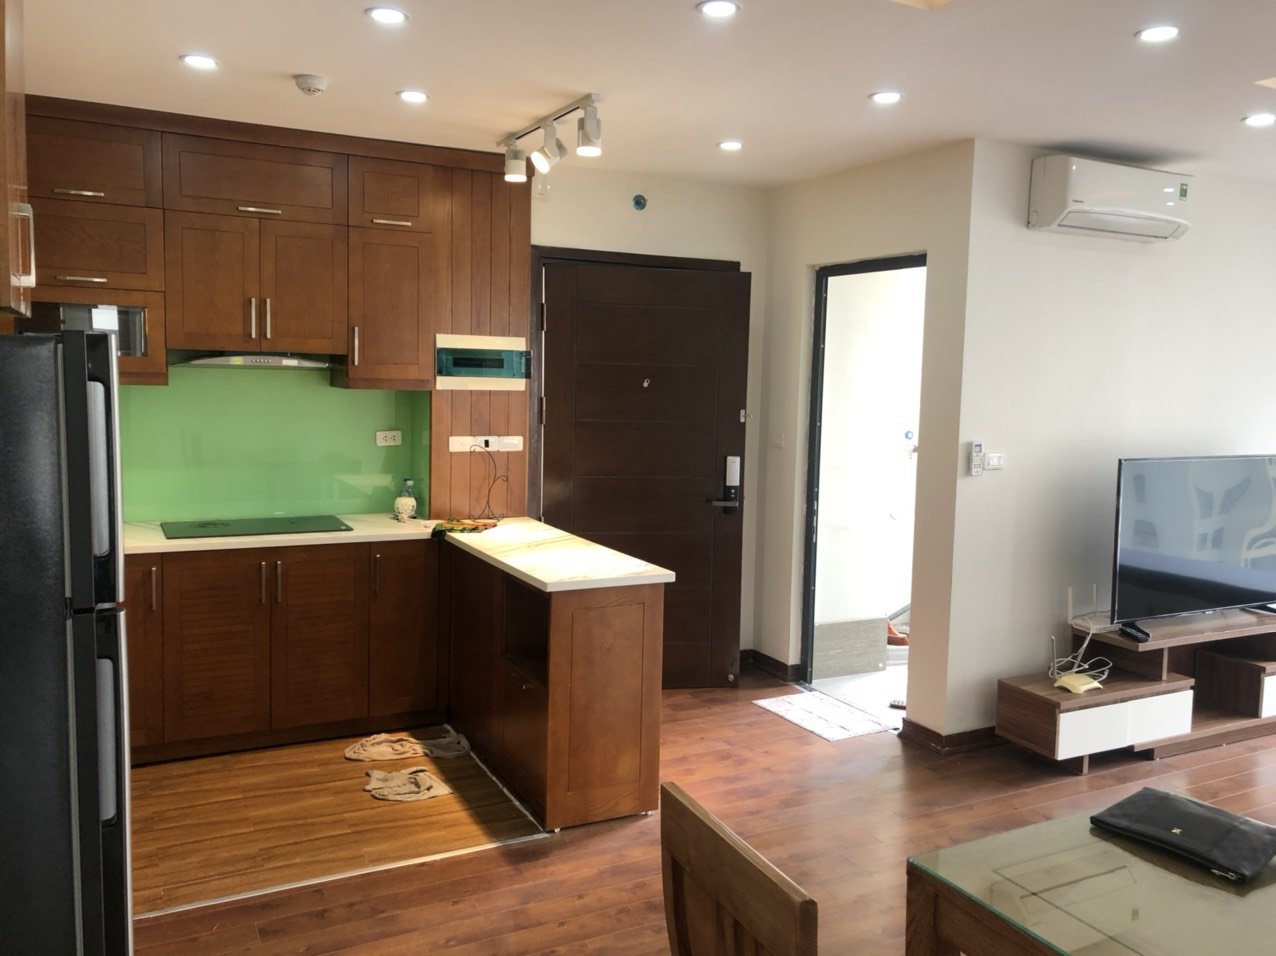 Gia đình chuyển sang villa nên bán gấp căn hộ 3 phòng ngủ tại An Bình City 4